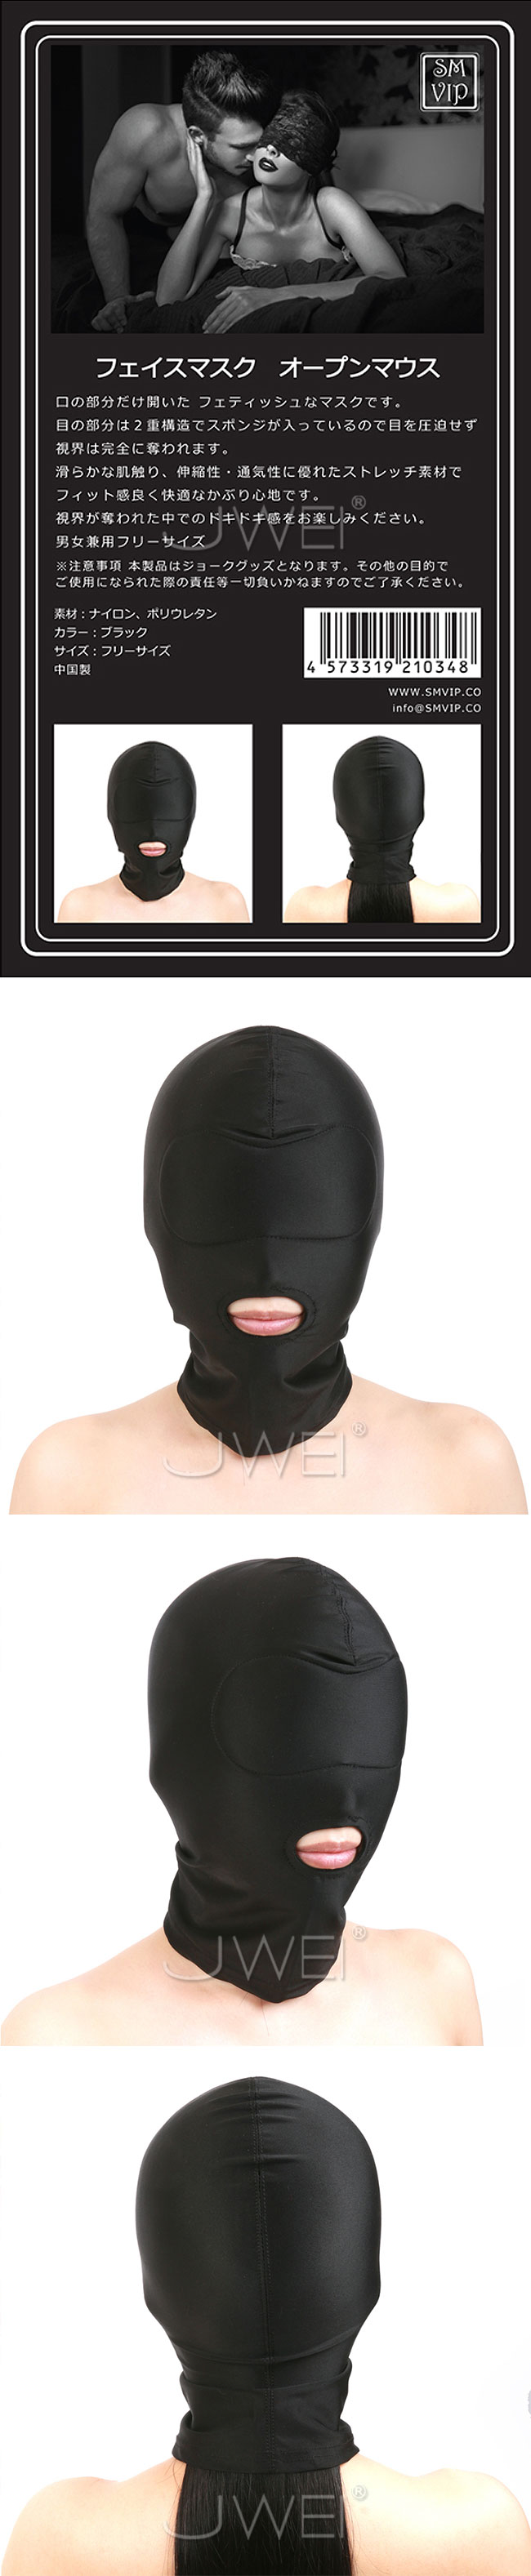 日本原裝進口A-ONE．SM VIP 男女通用黑色露嘴 彈性透氣型頭罩